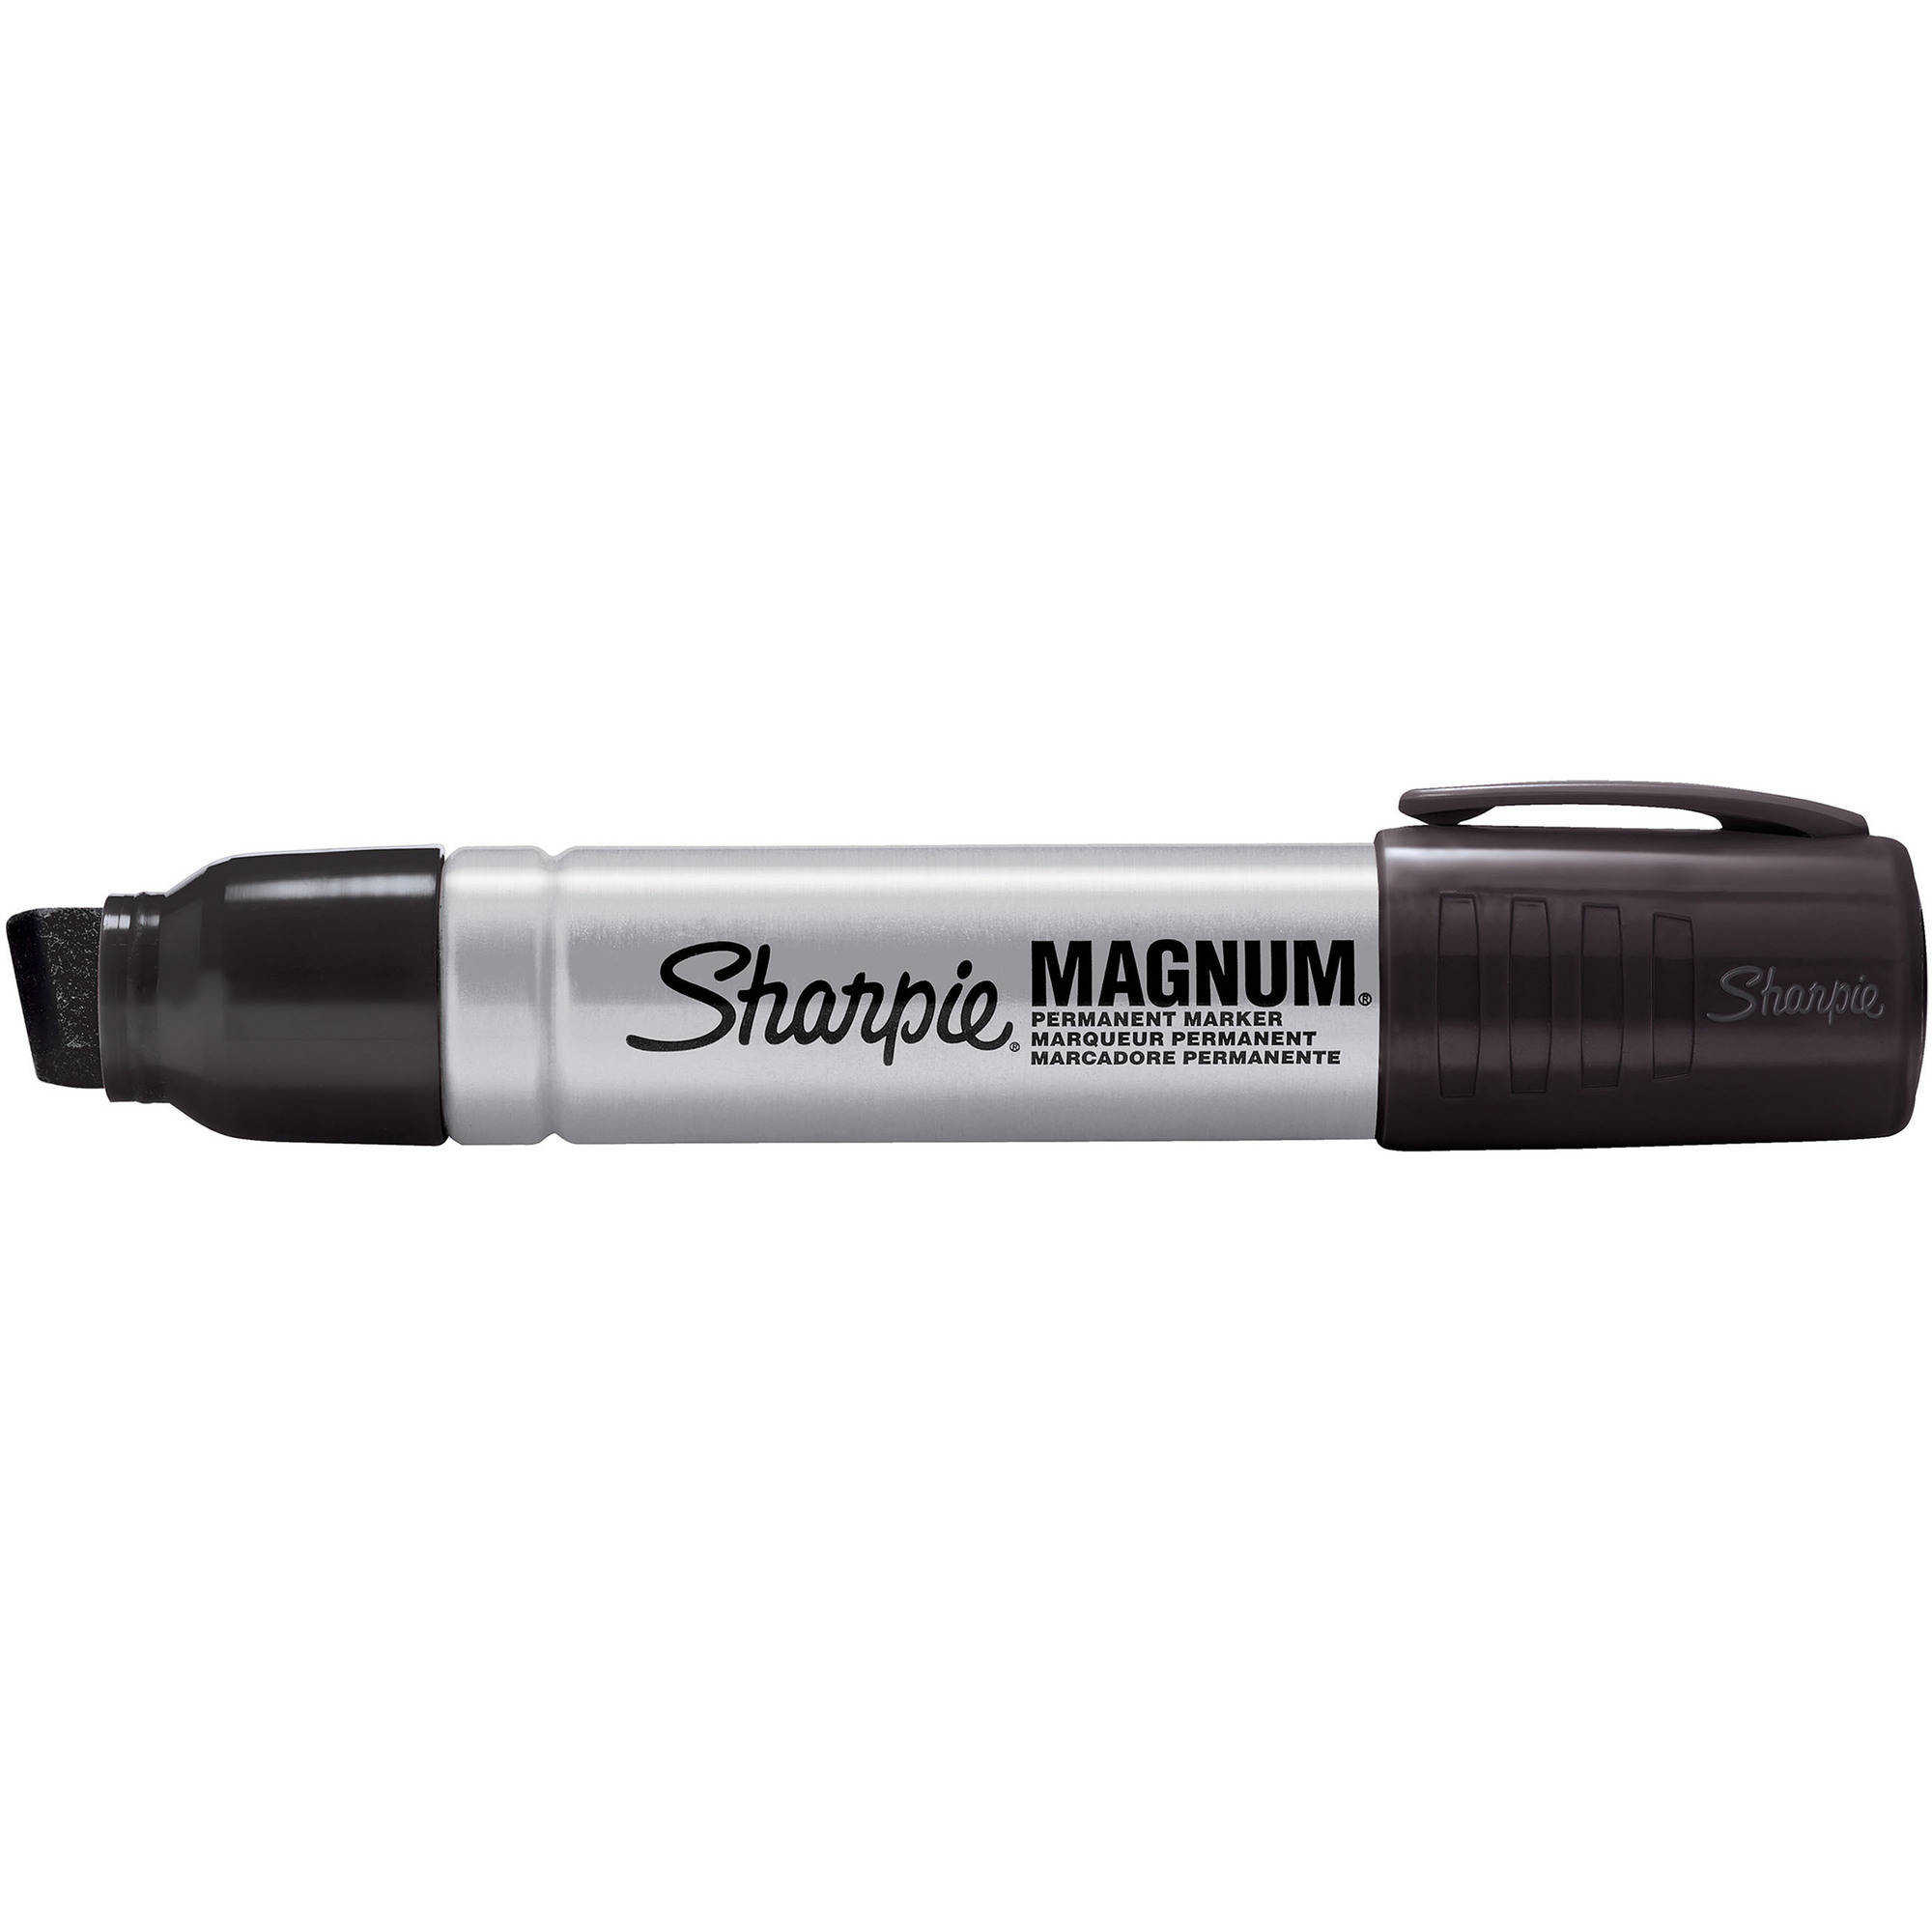 Sharpie Marker, Magnum 1ct